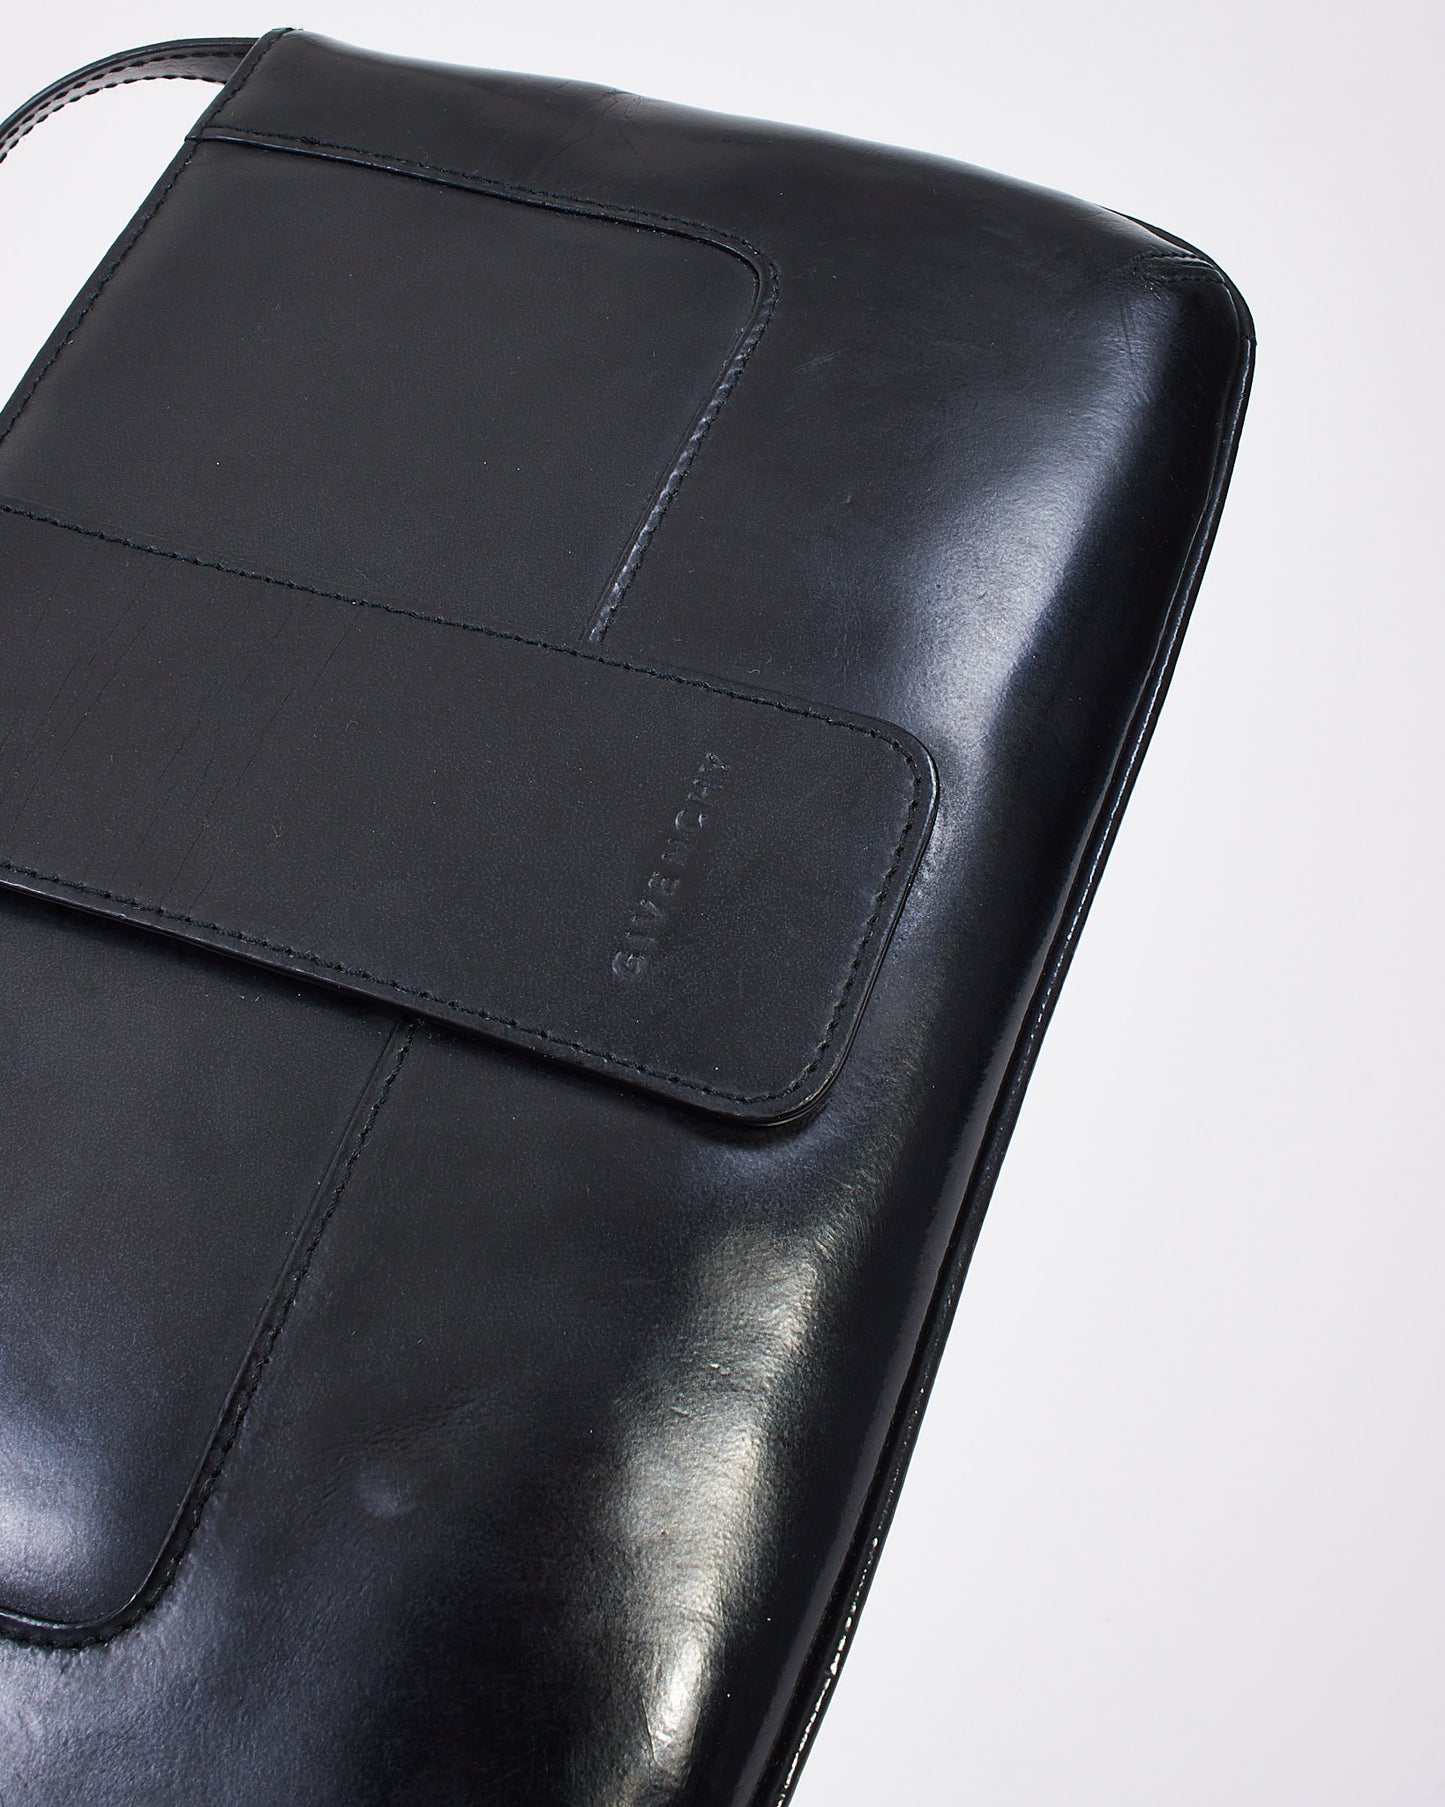 Givenchy Vintage Black Patent Leather Logo Shoulder Bag